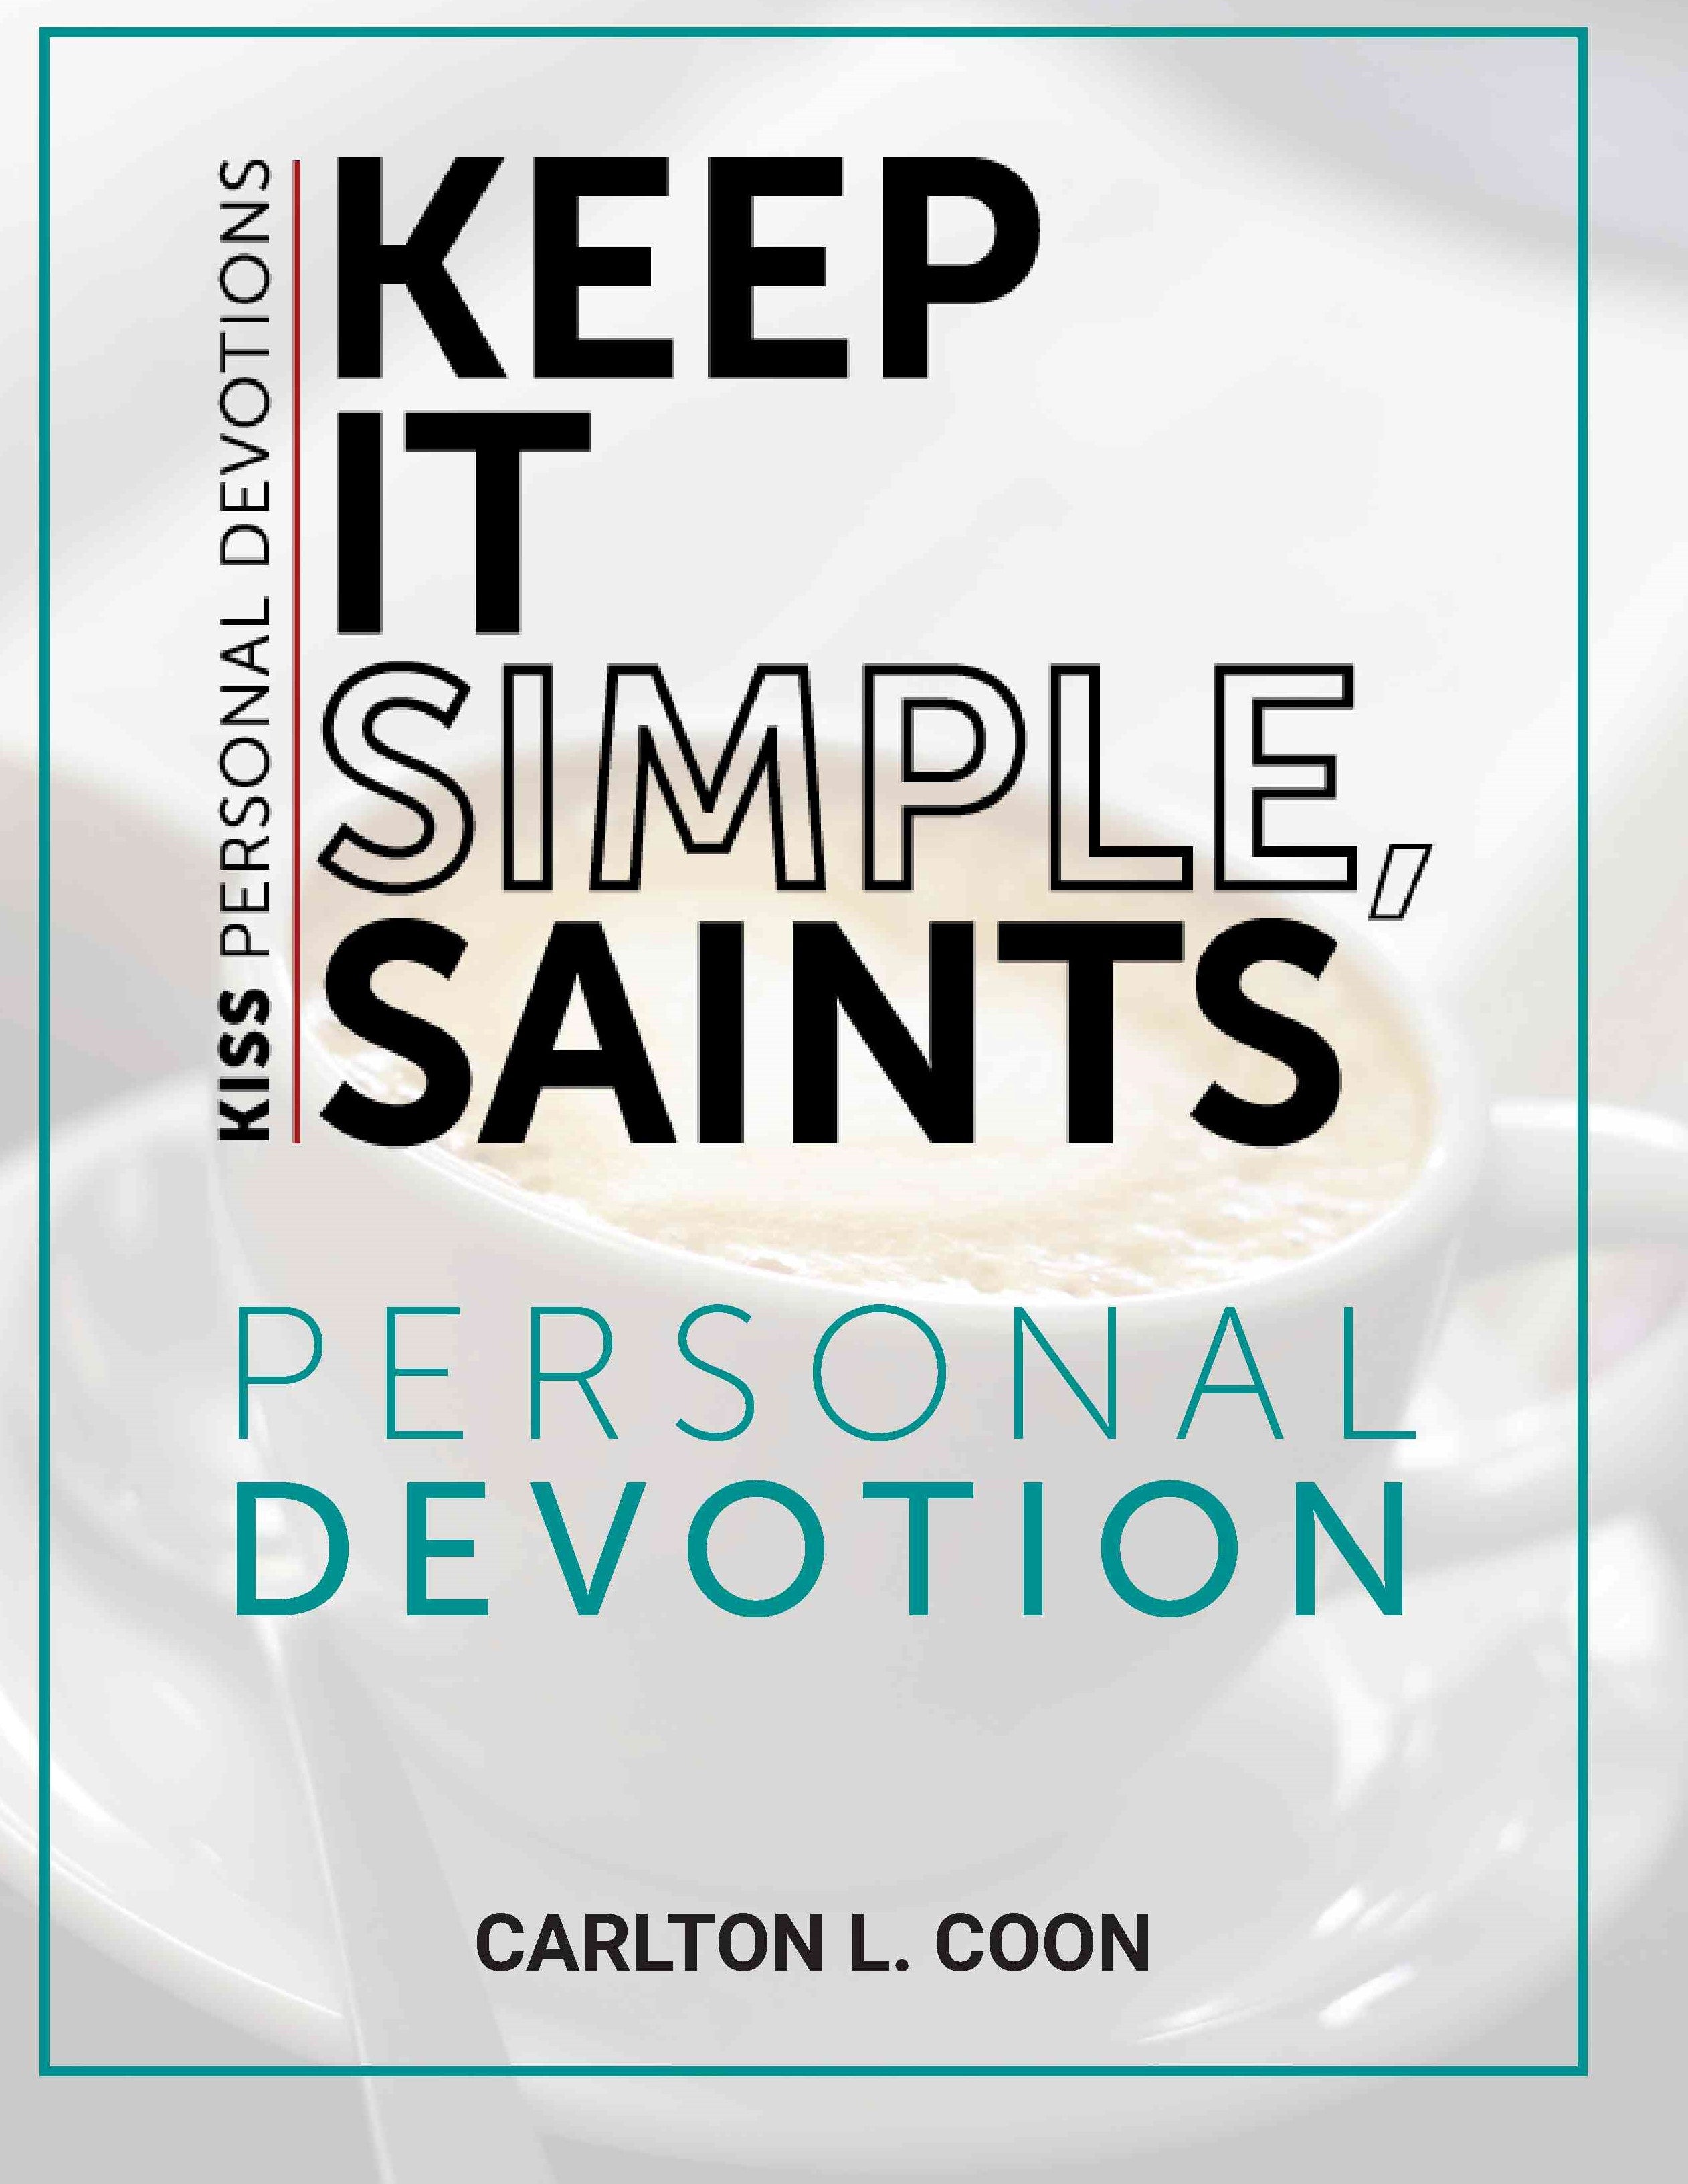 Personal Devotion - Keep It Simple Saints (K.I.S.S.)